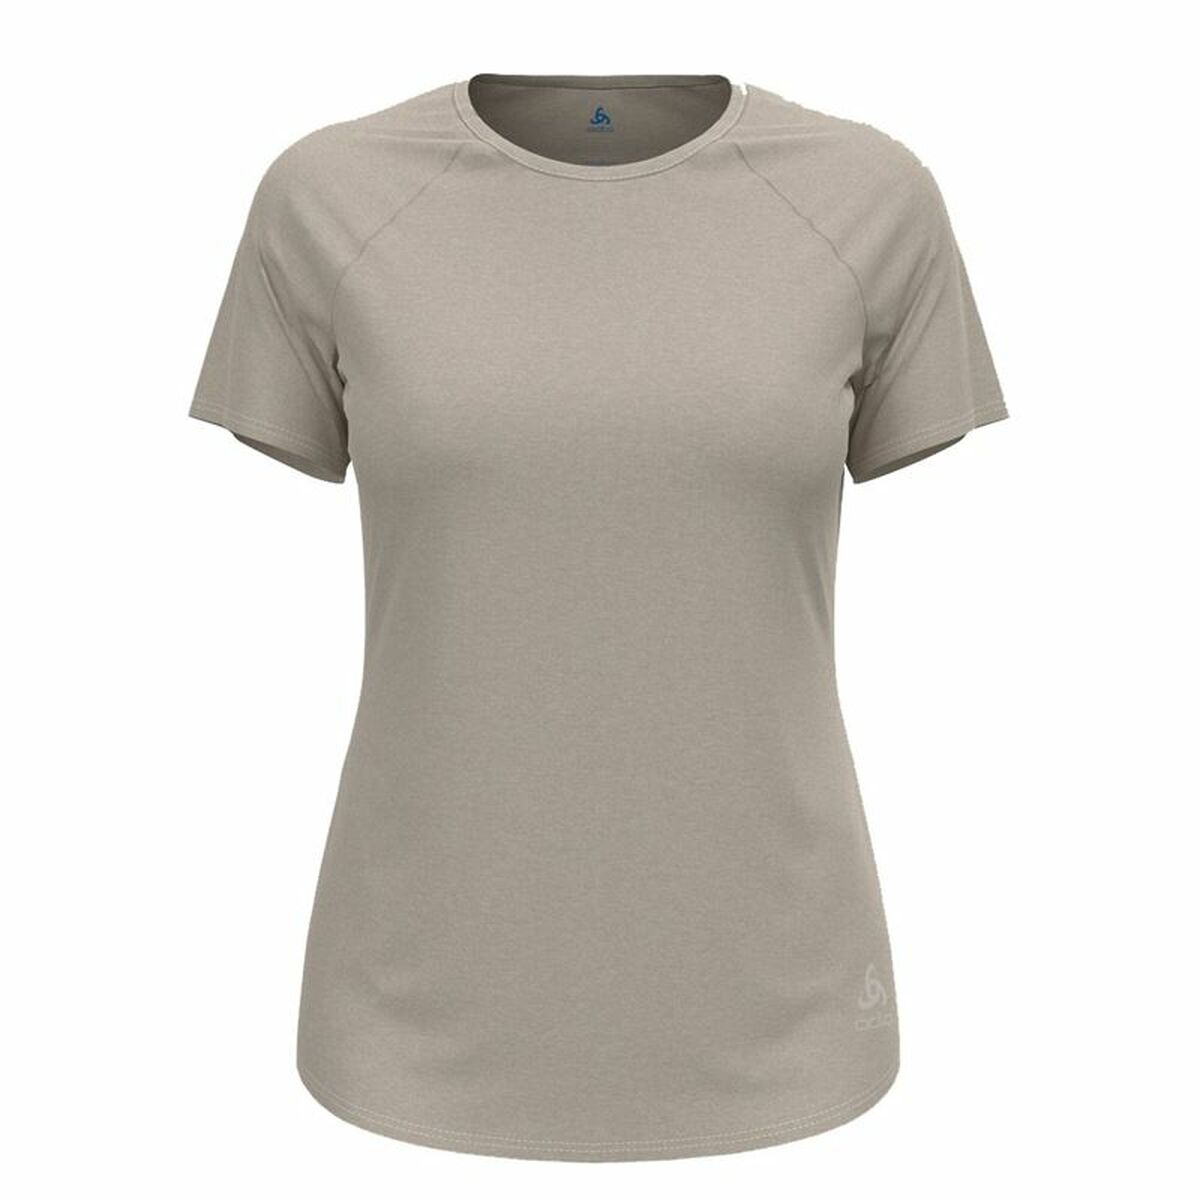 Kaufe Damen Kurzarm-T-Shirt Odlo Essential 365 Grau bei AWK Flagship um € 53.00